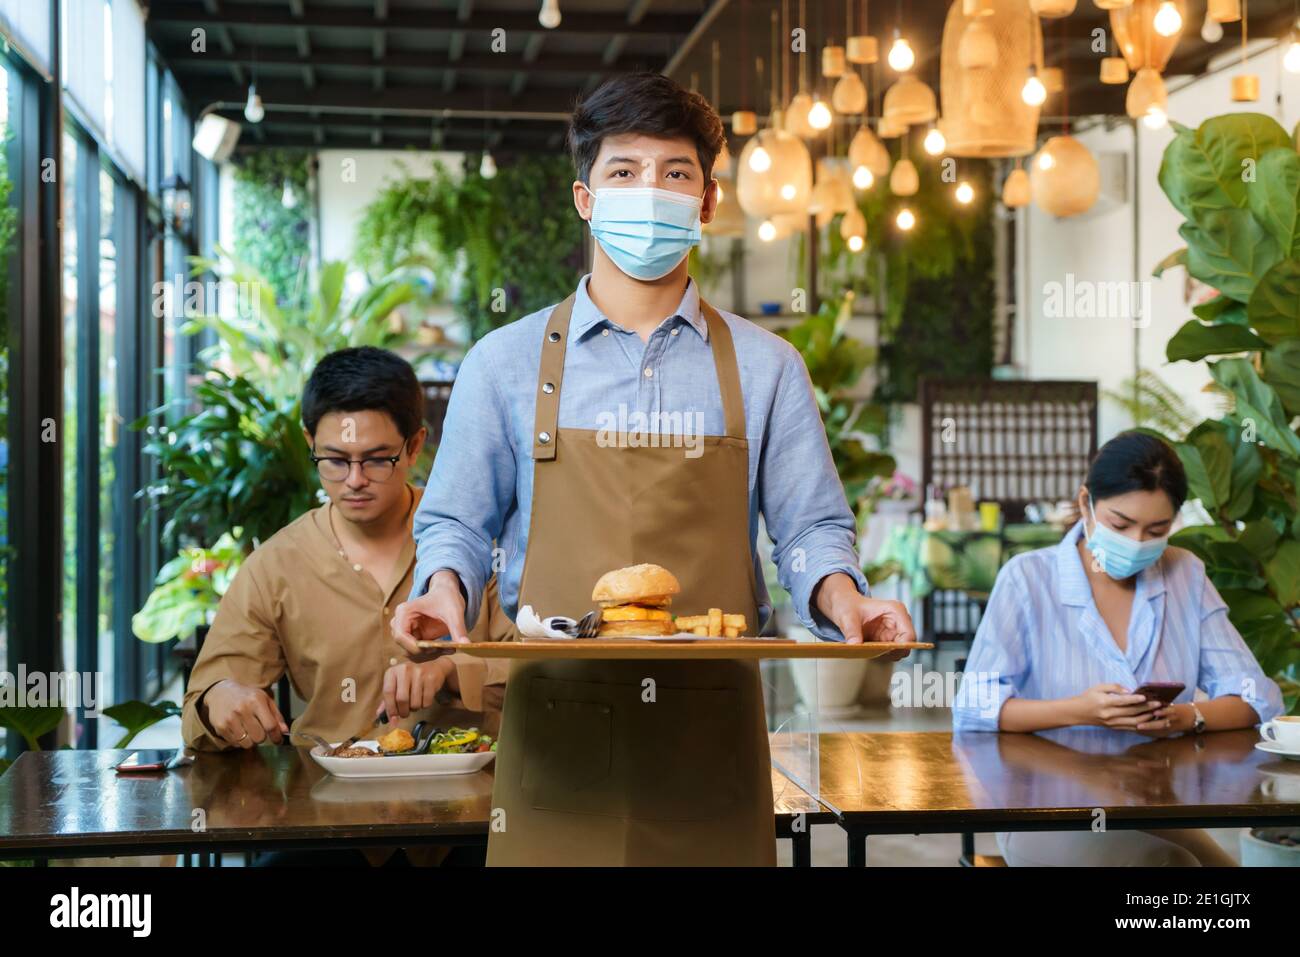 Portrait attraktive asiatische Kellnerin tragen Gesichtsmaske und Gesichtsschutz halten Lebensmittel Tablett zu servieren Mahlzeit an Kunden mit custome im Hintergrund. Neue normale Stockfoto